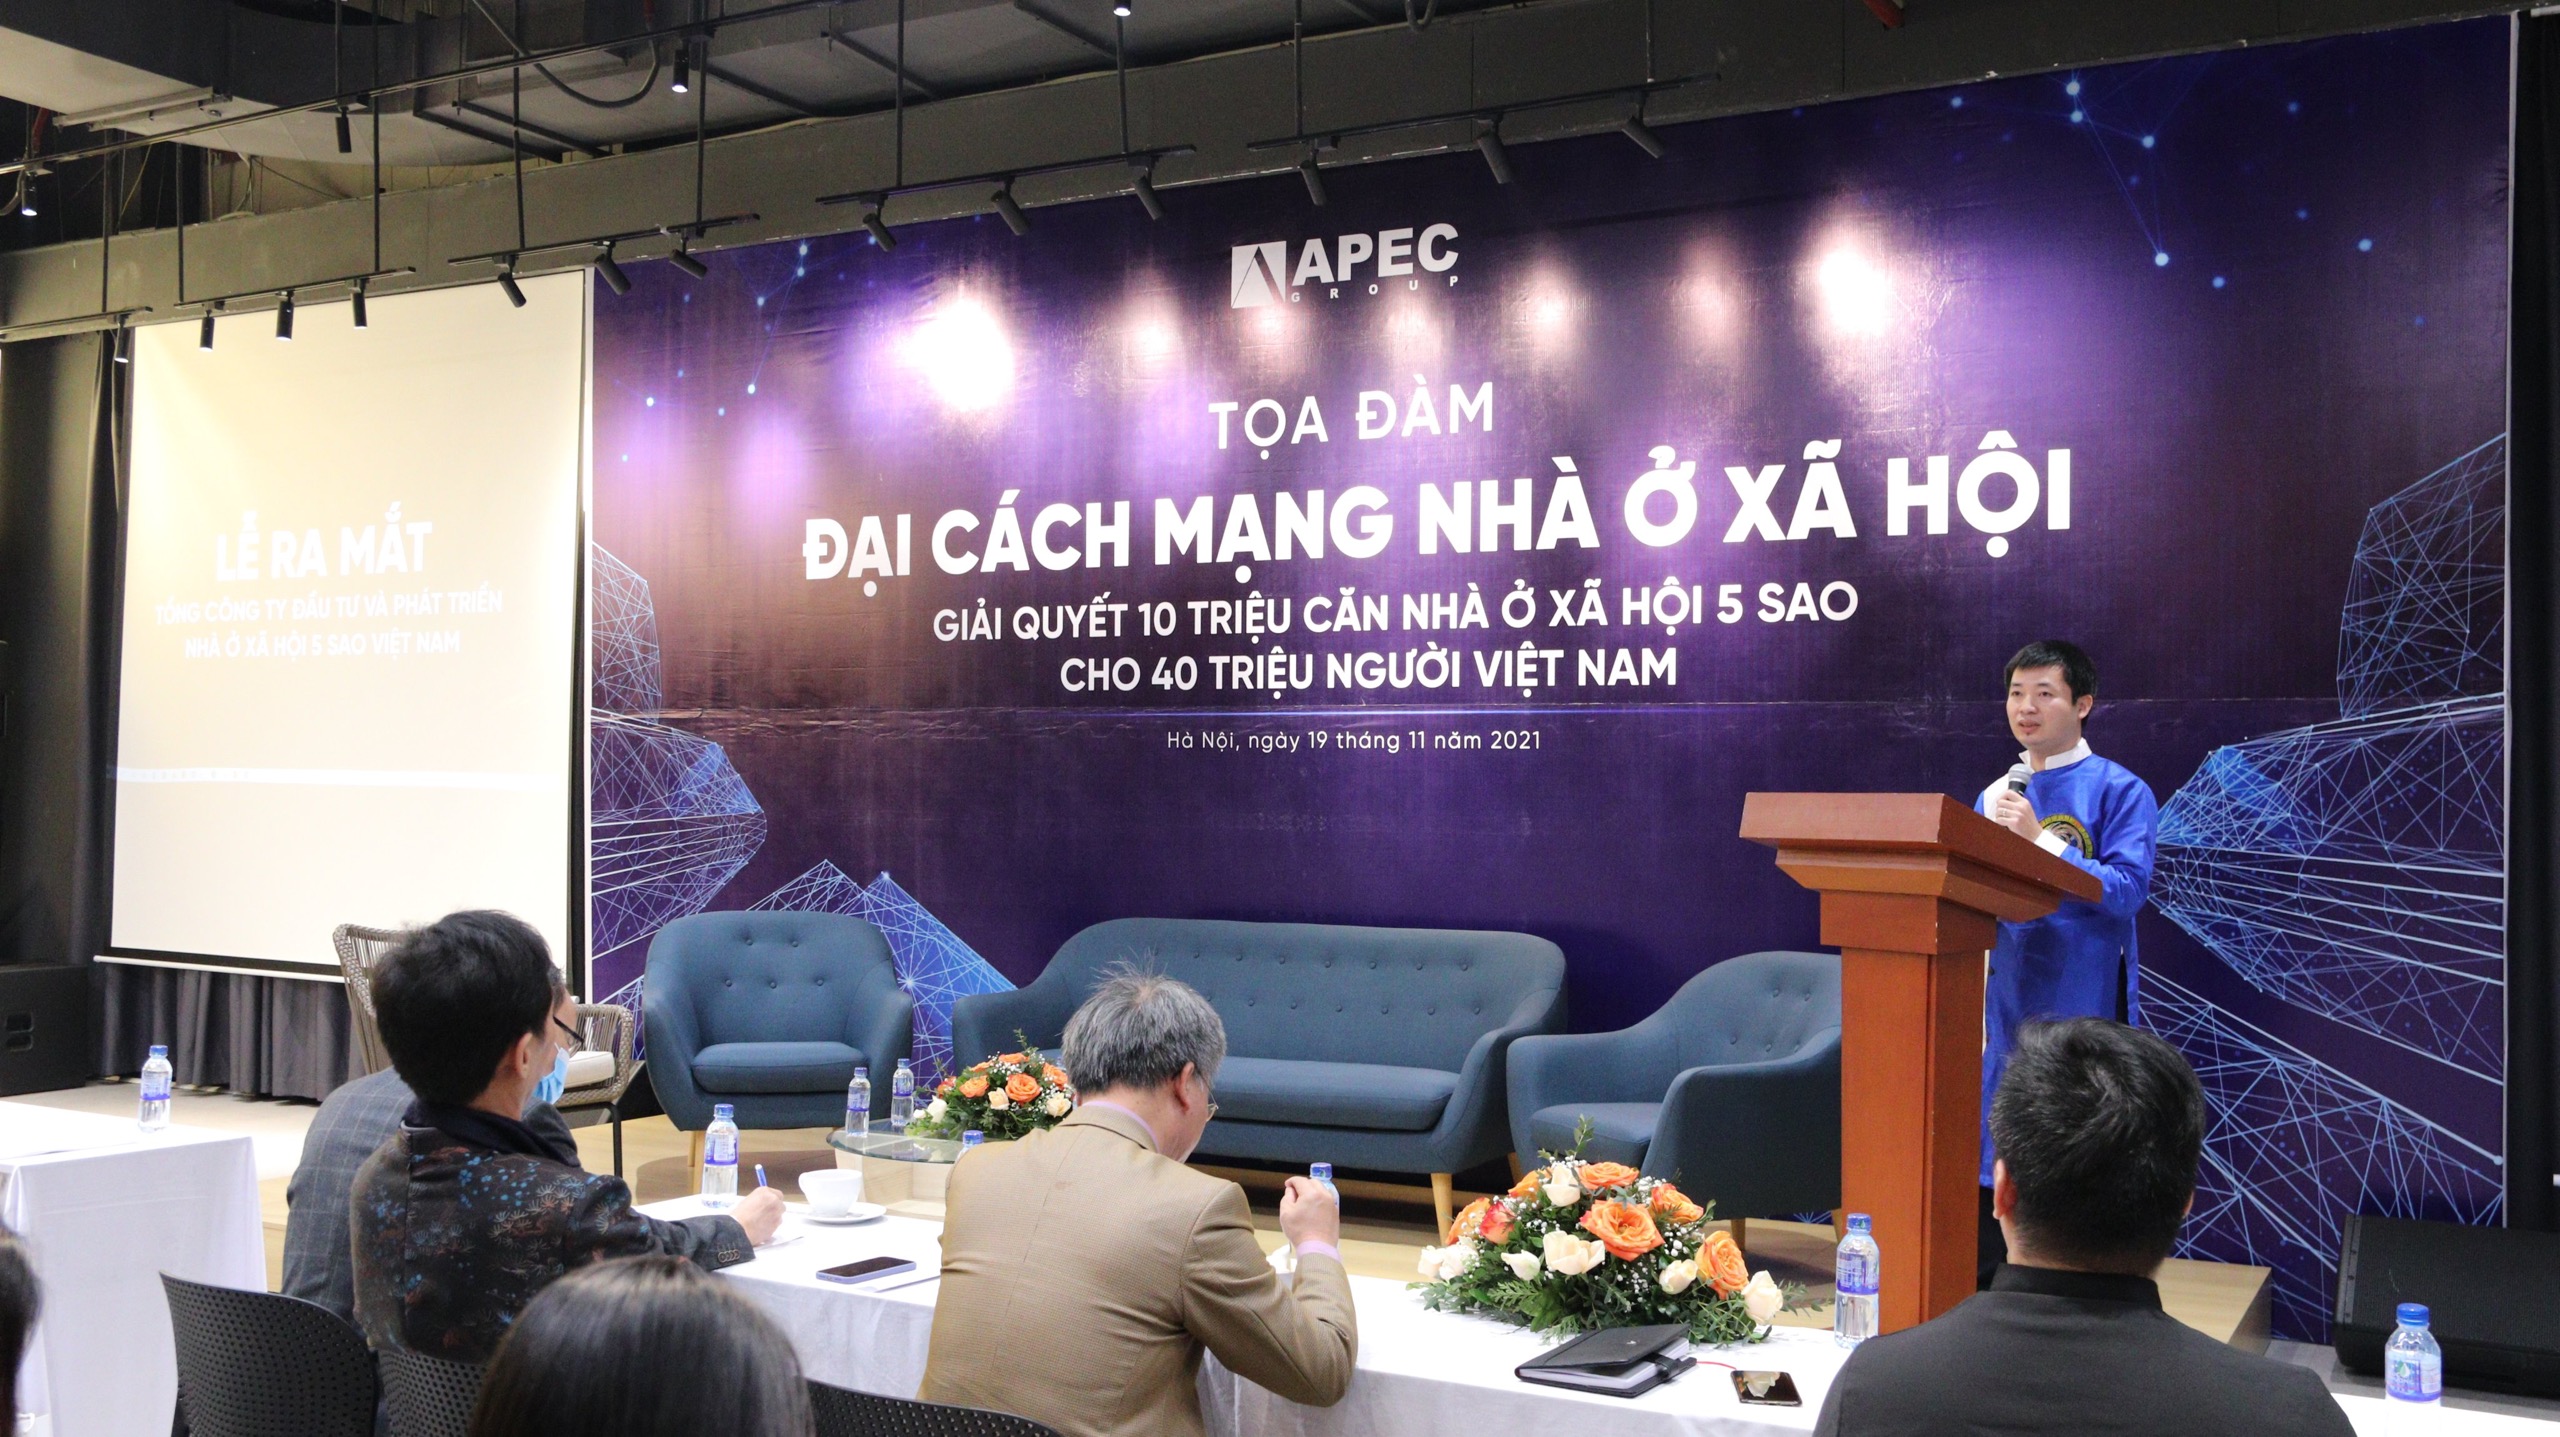 ông Nguyễn Quang Huy, Tổng giám đốc Tổng công ty Đầu tư - phát triển nhà ở xã hội 5 sao Việt Nam phát biểu tại buổi lễ.